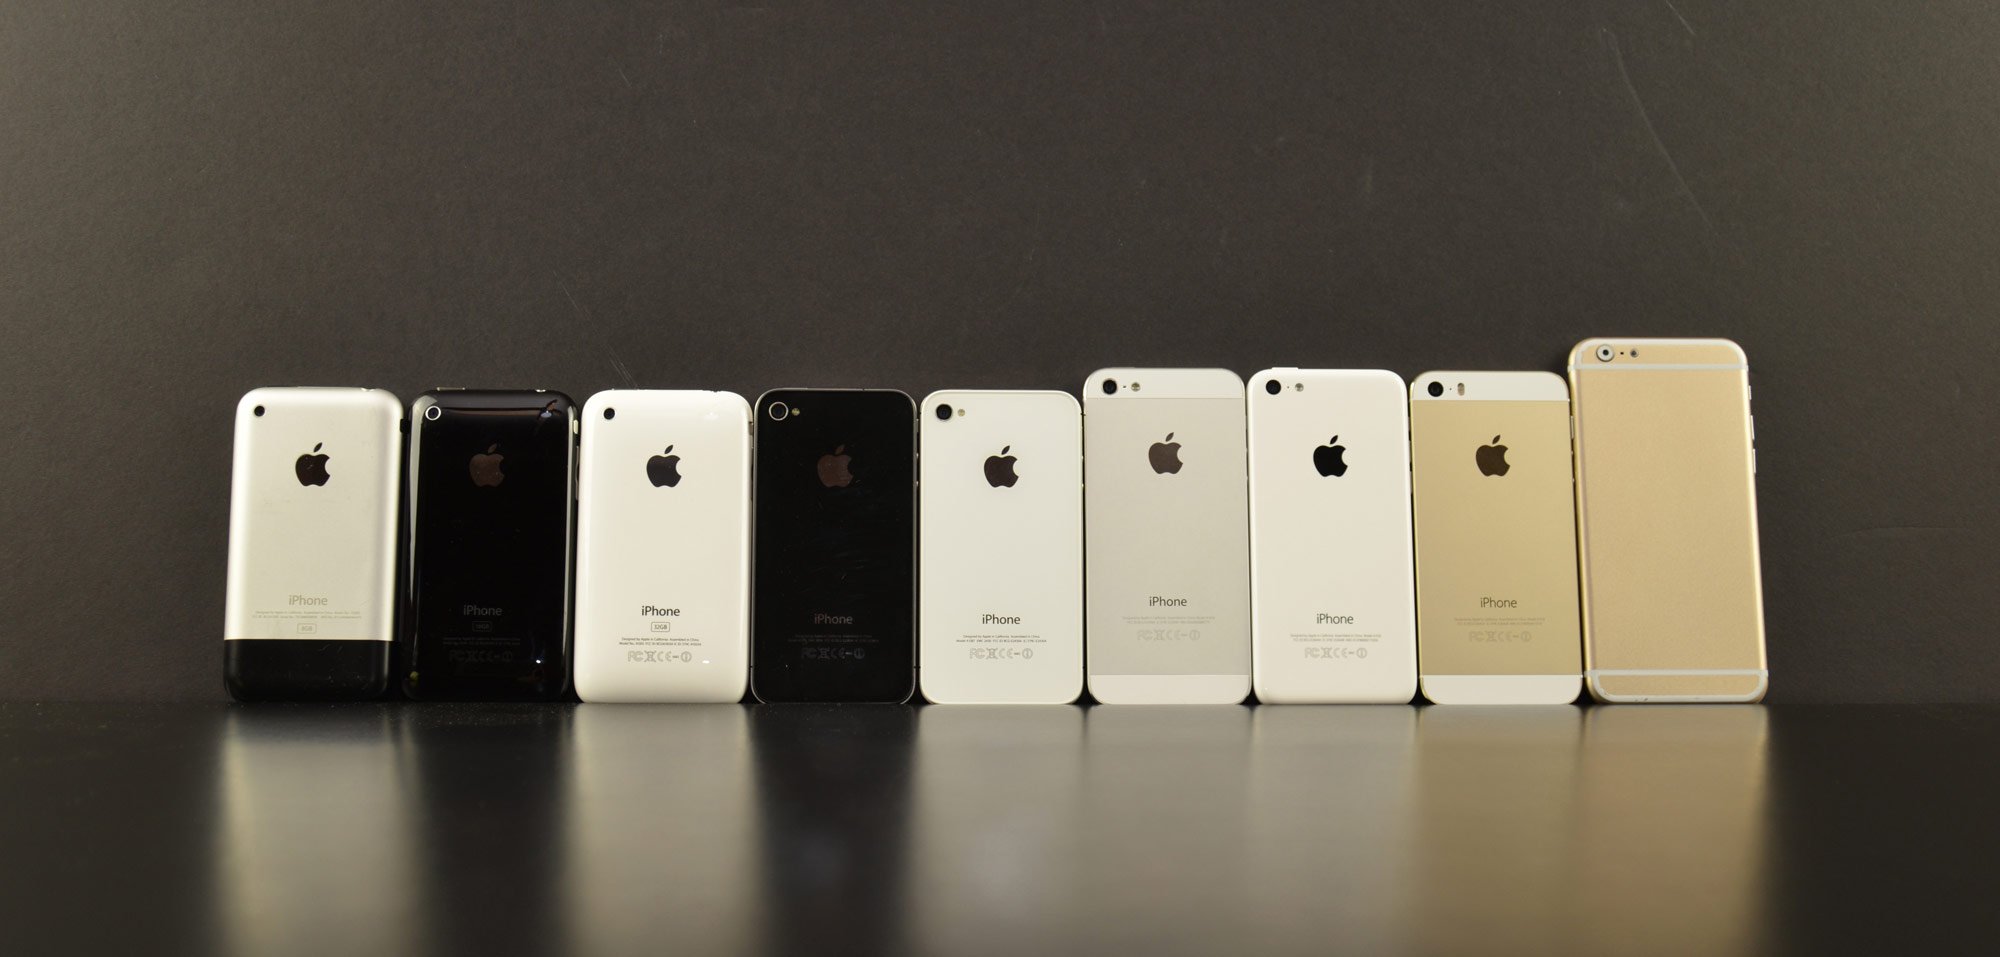 Hochauflösende Fotos: iPhone 6 im Vergleich mit Samsung Galaxy S5 und HTC One M8 7